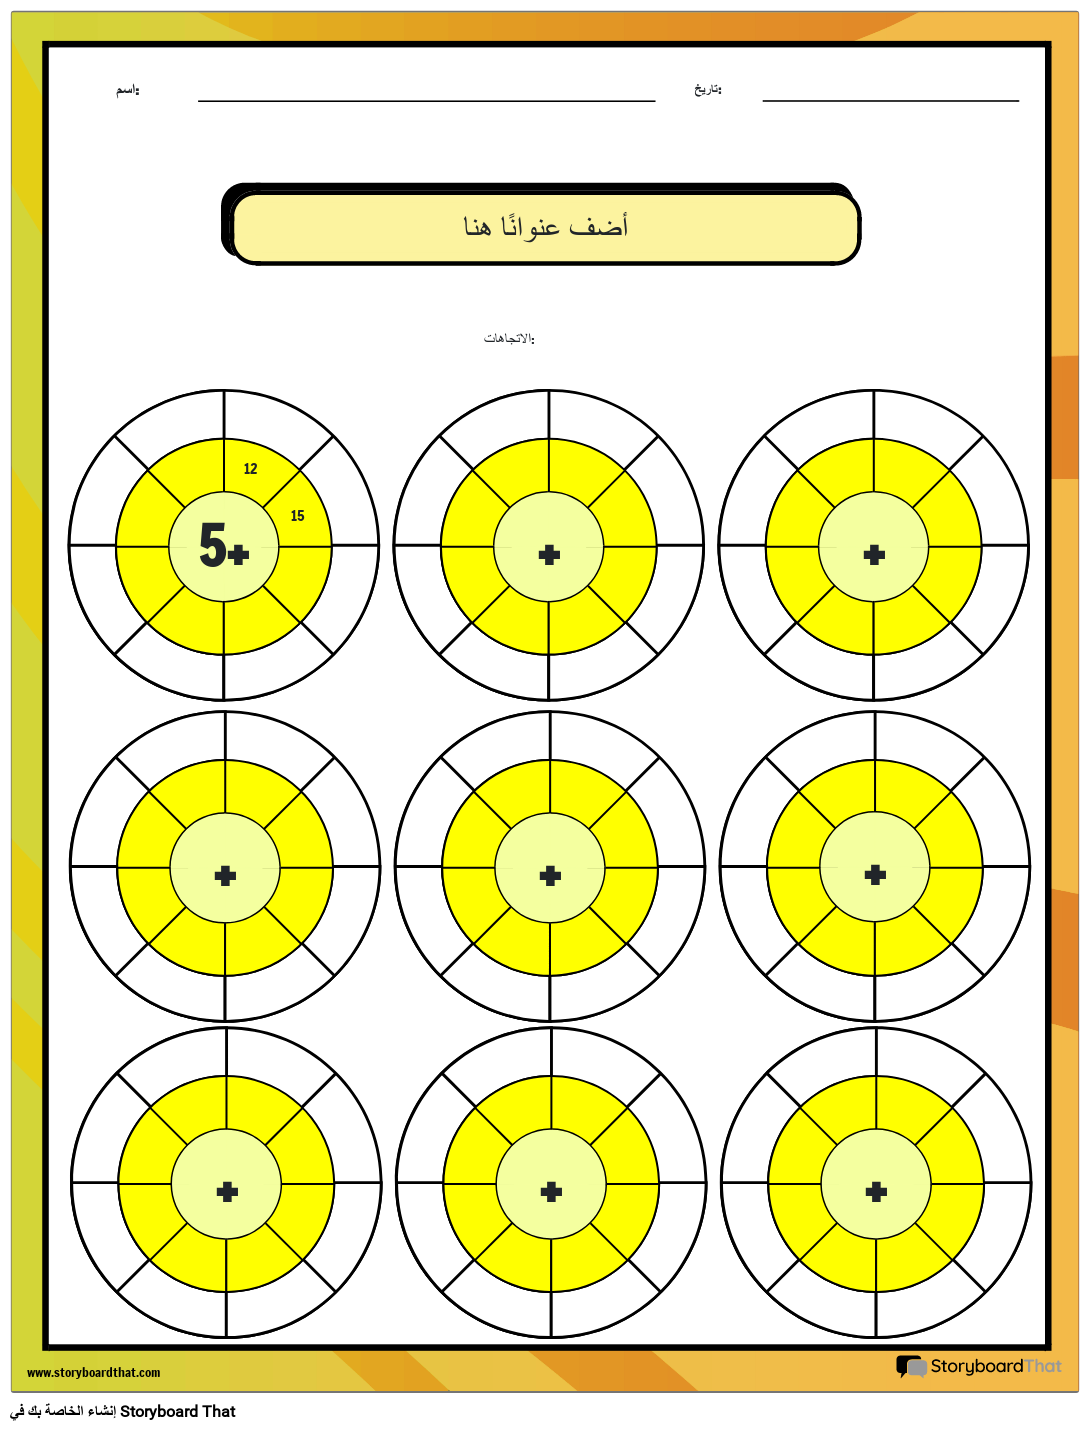 عجلة الجمع - ورقة عمل لعبة الرياضيات